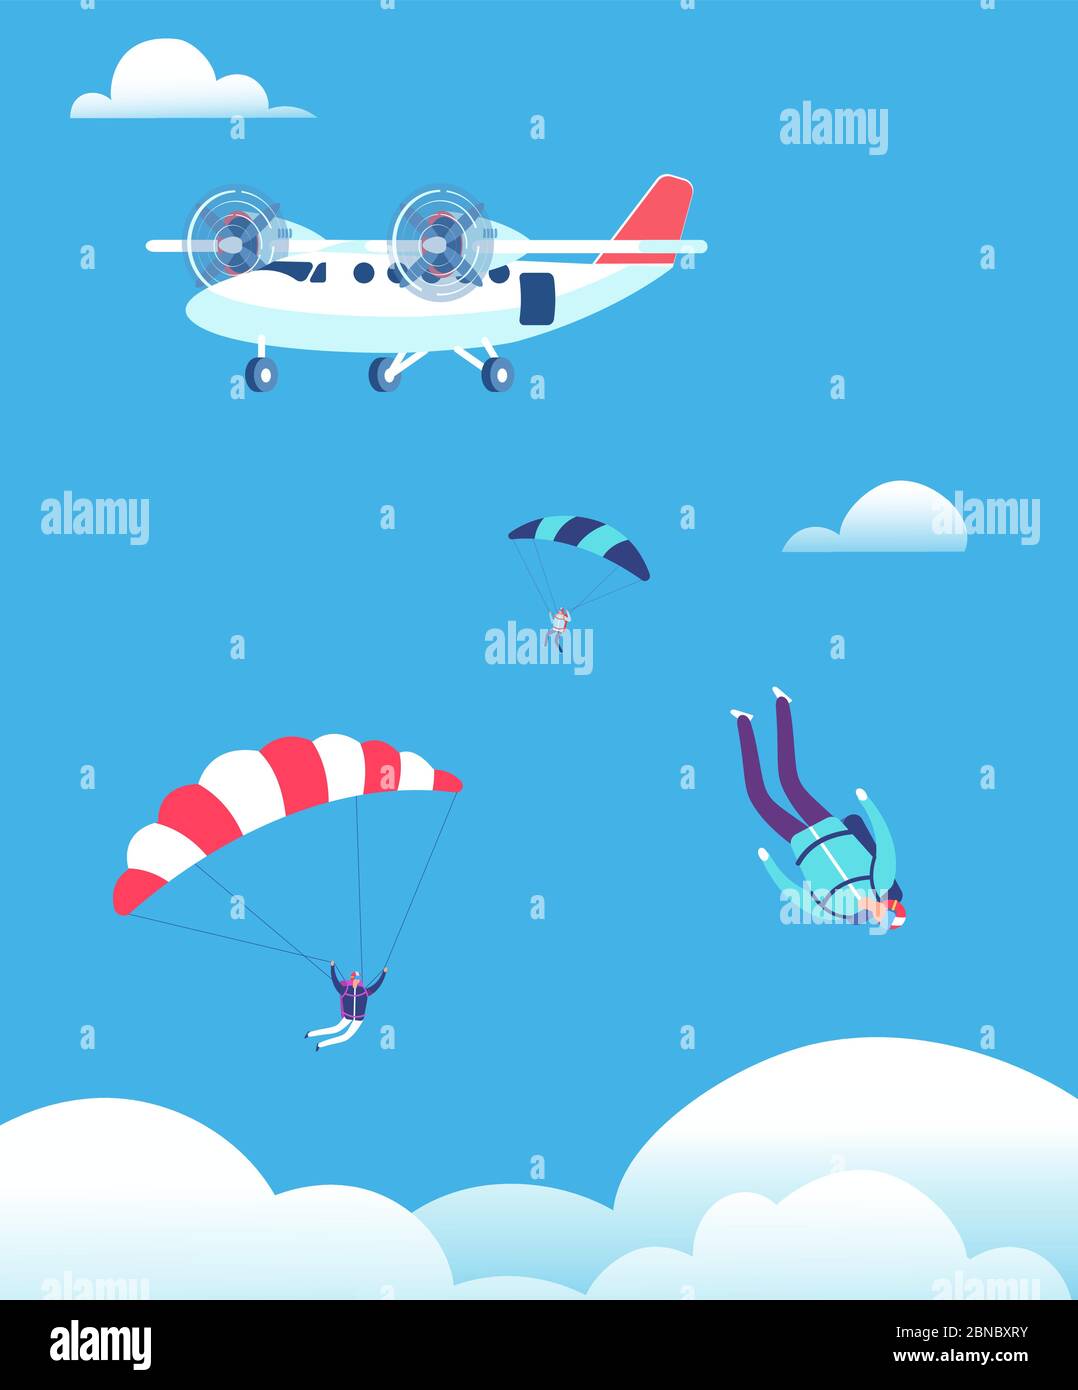 Concepto de paracaidismo. Paracaidistas saltando del avión en el cielo azul. La gente se salpana ilustración vectorial. Paracaidismo paracaidista, salto paracaidista Ilustración del Vector